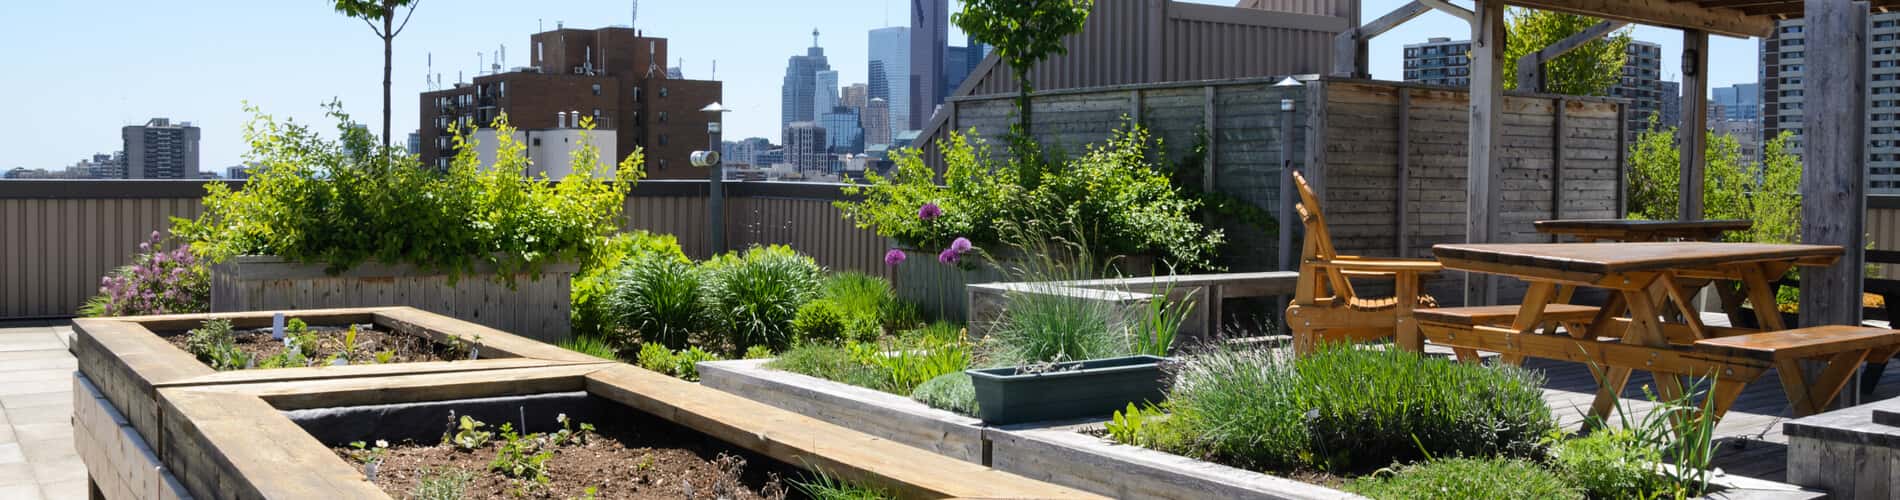 Urban Gardening - Gärtnern in der Stadt